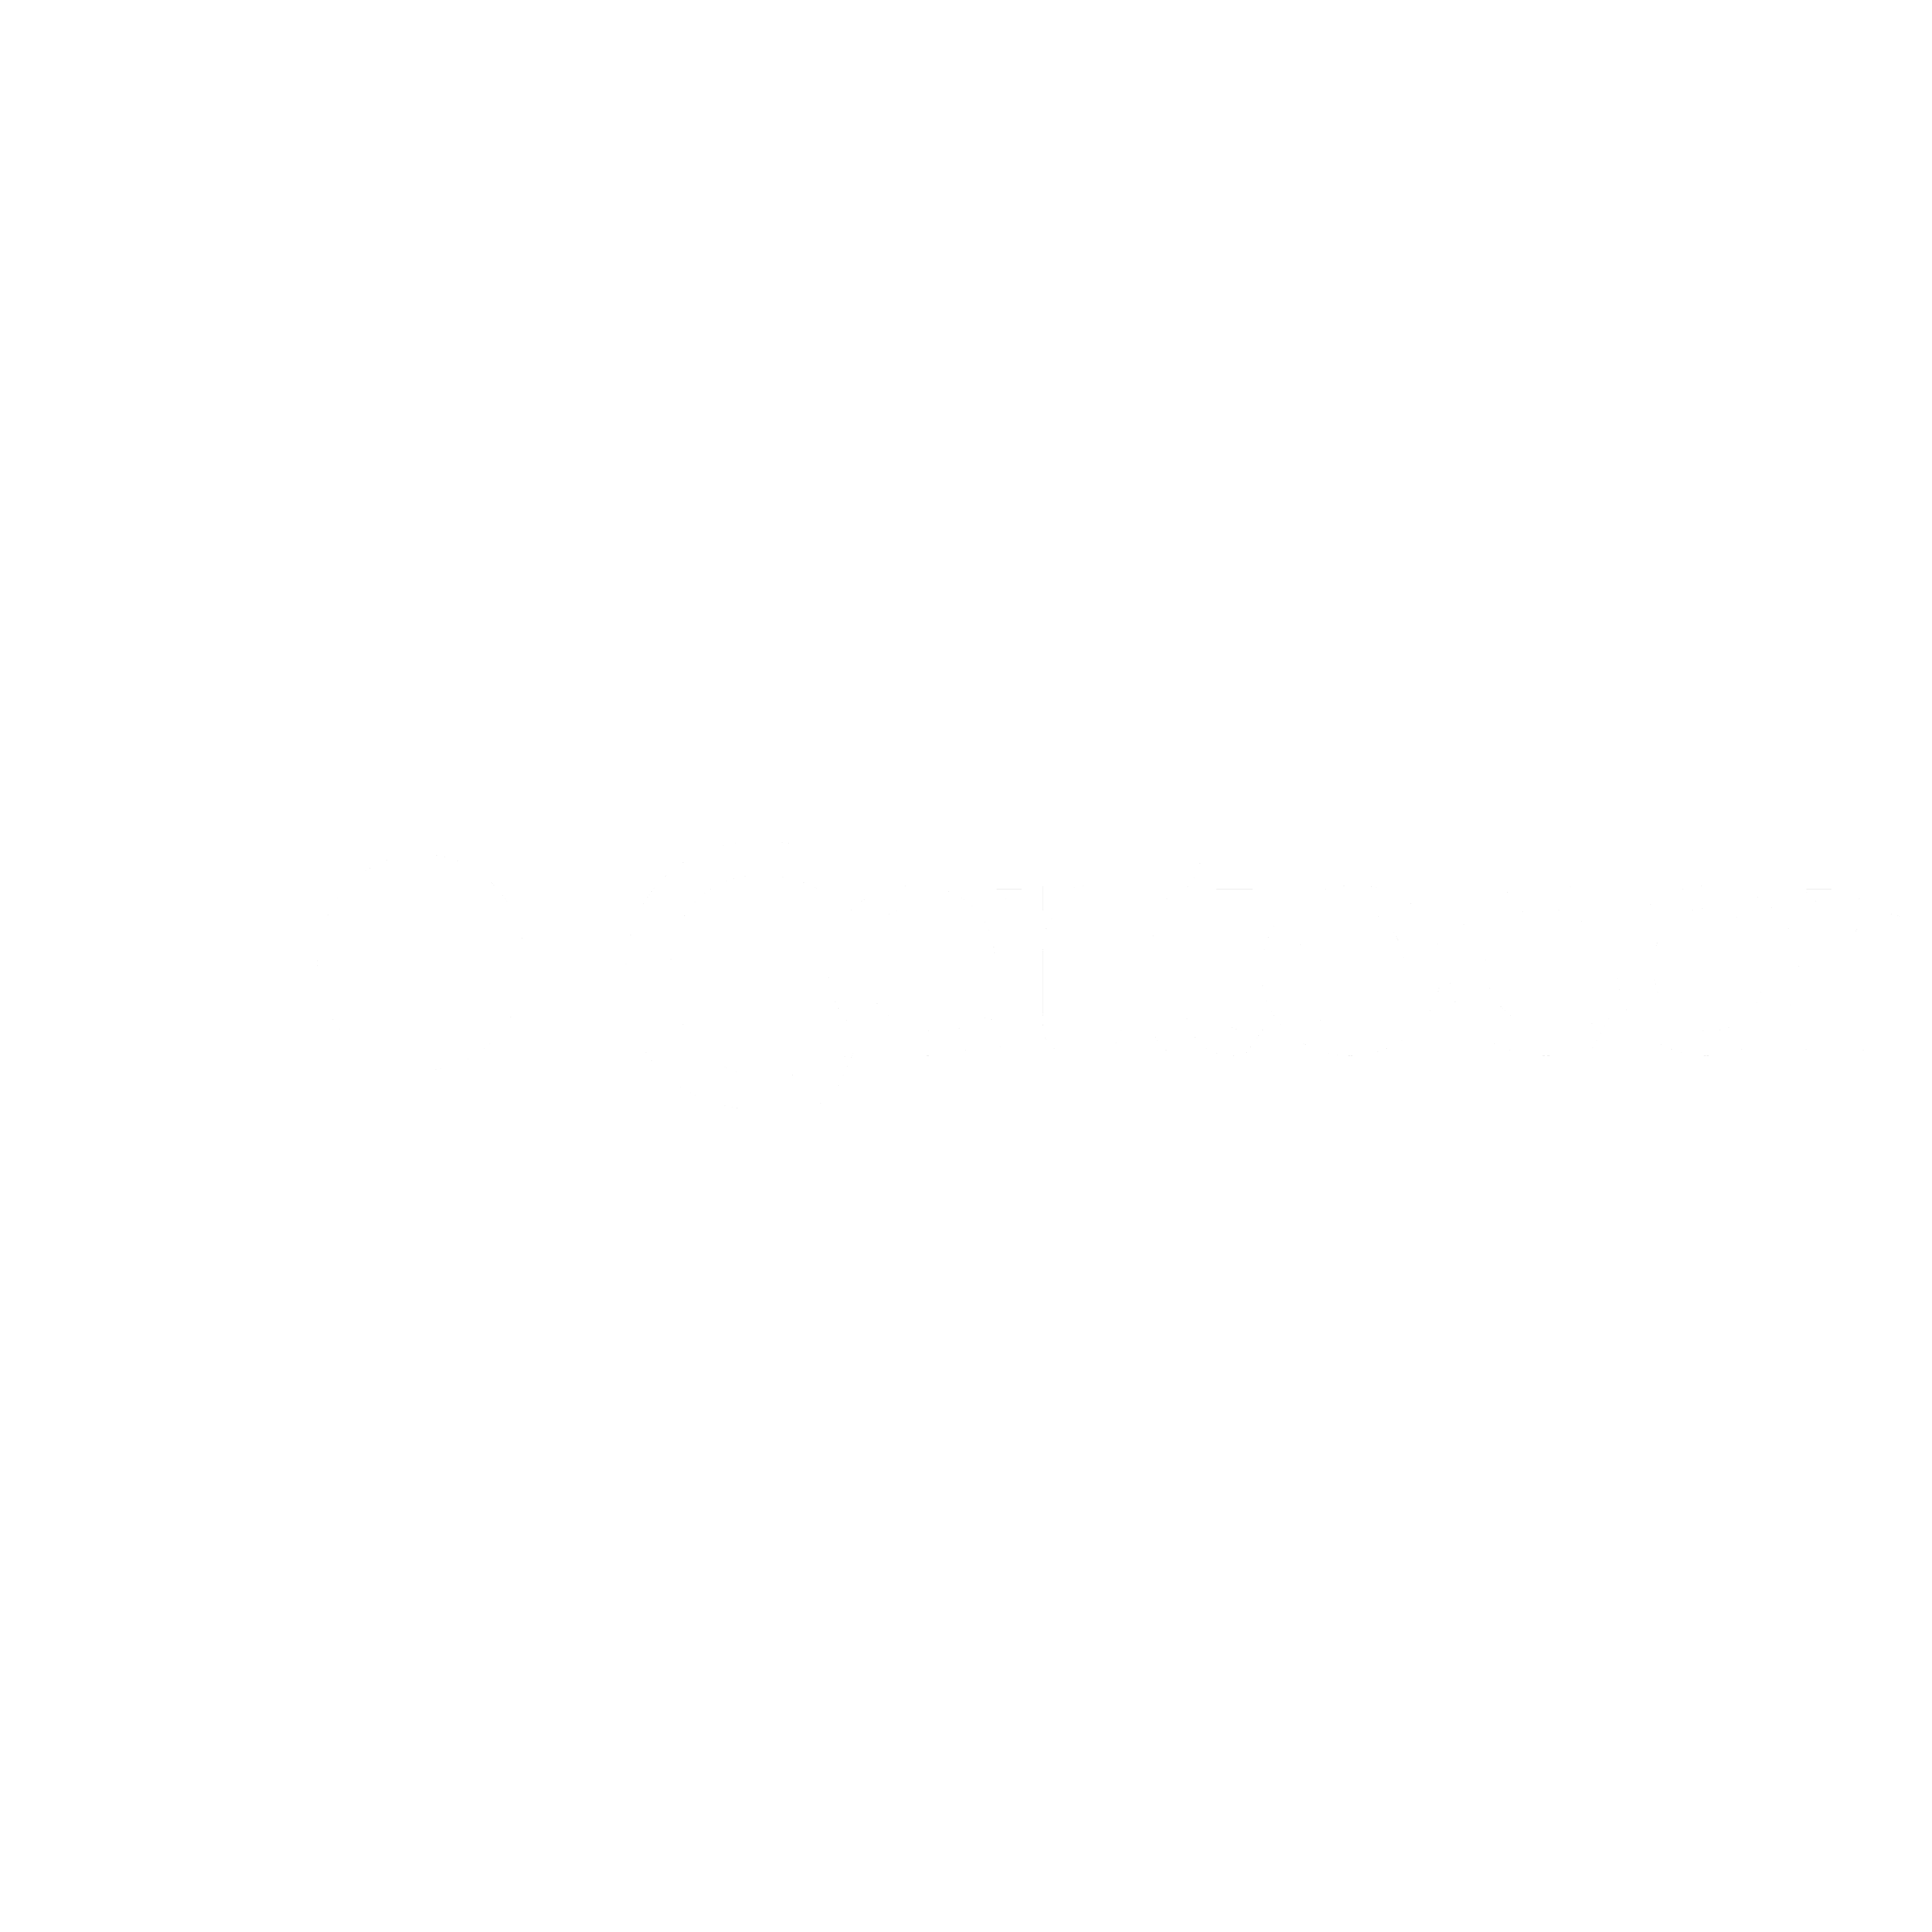 Centocor Logo - Centocor Logo PNG Transparent & SVG Vector